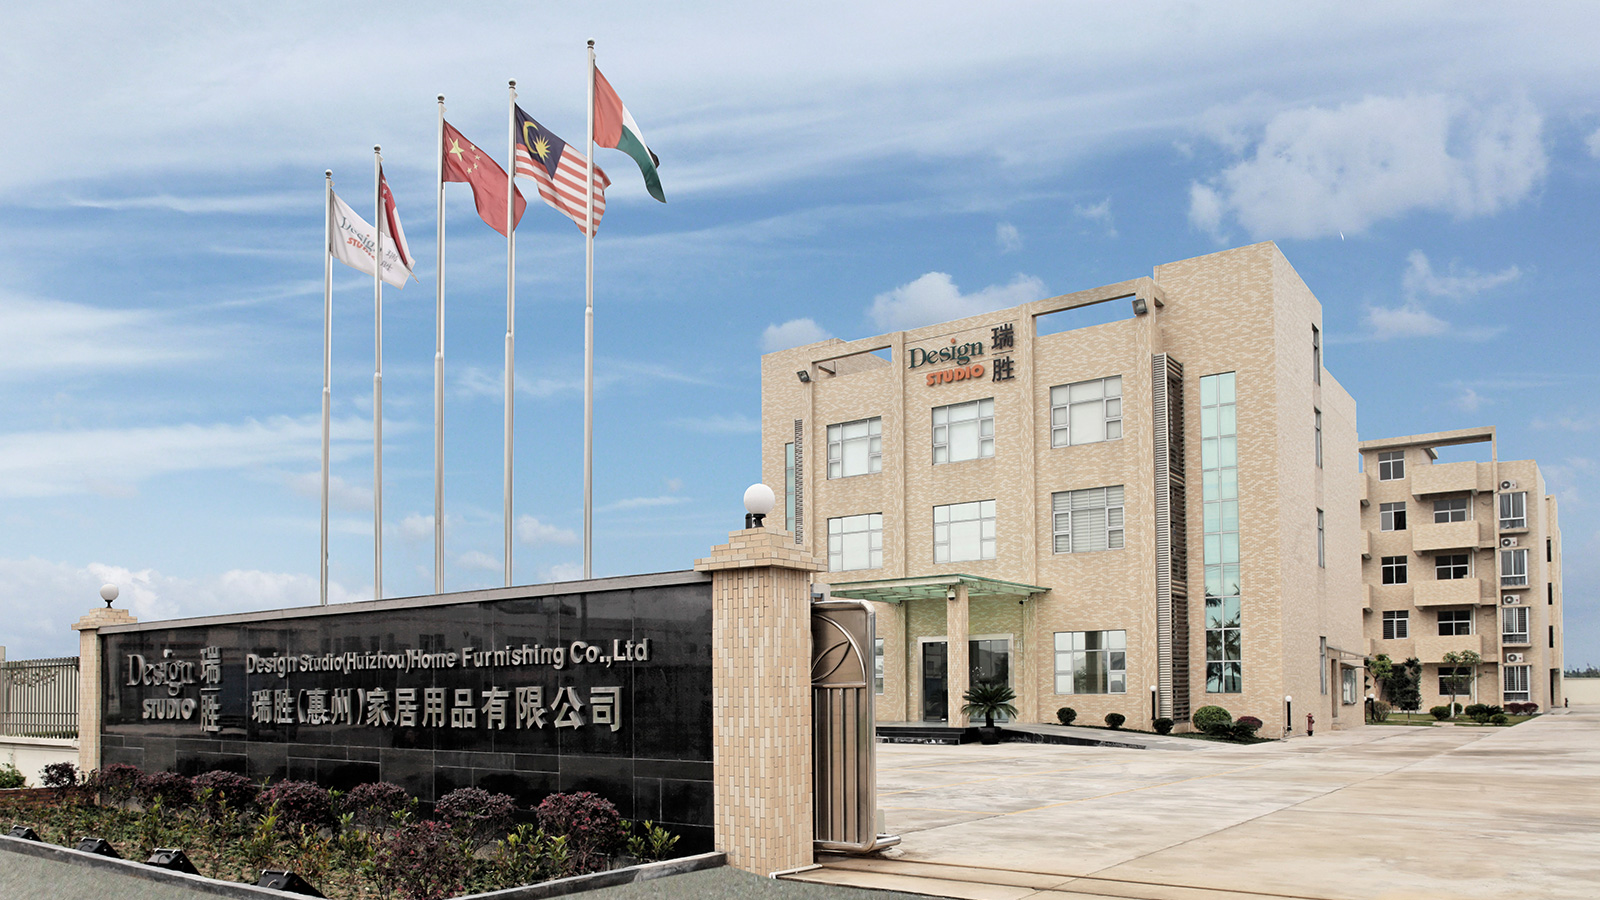 Manufacturing facility in Huizhou, China